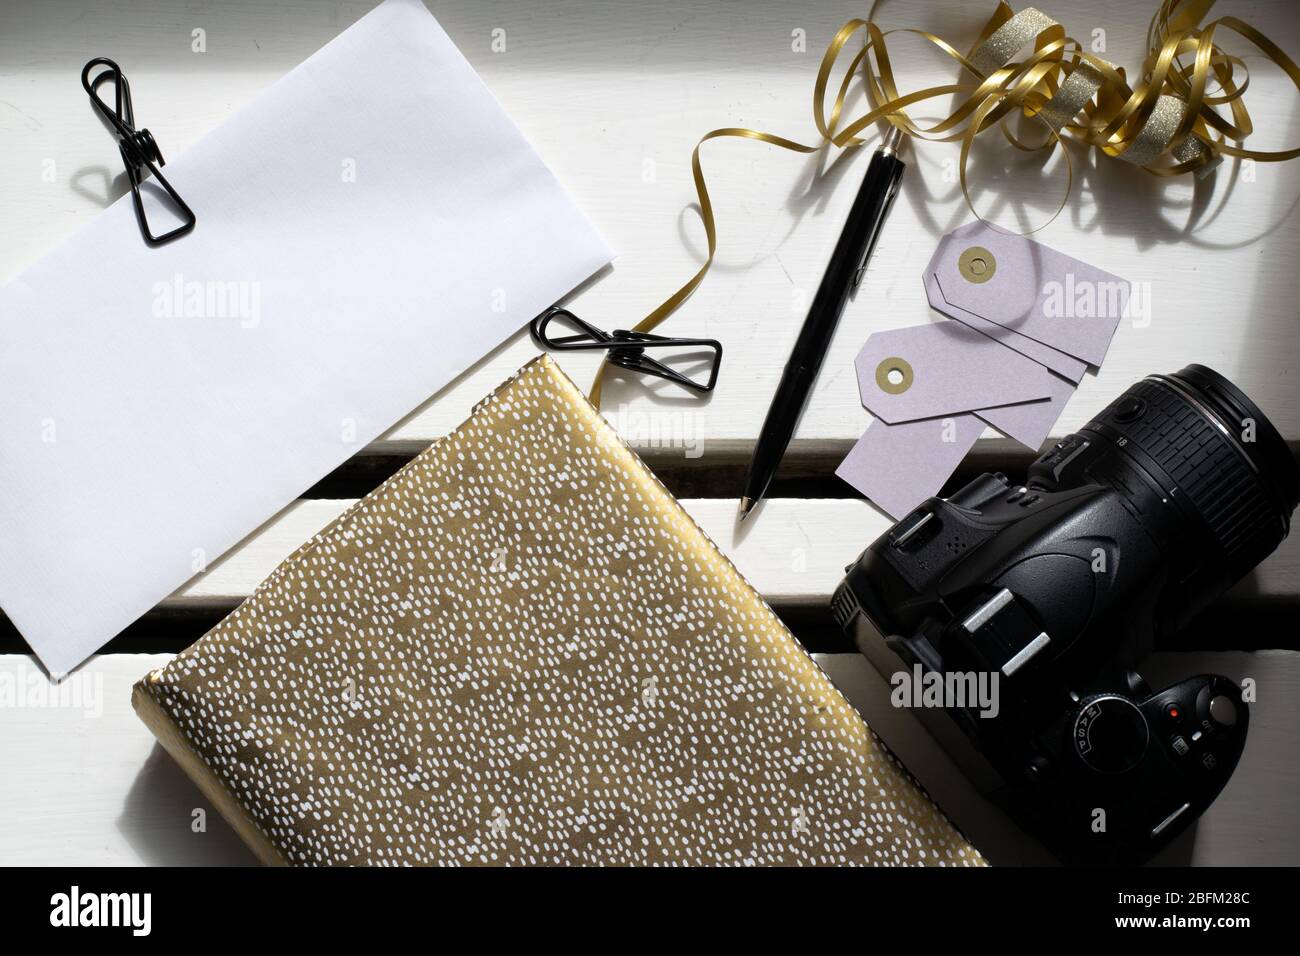 Preparazione per le feste con notebook dorato, fotocamera e clip per rilegatura su busta bianca Foto Stock